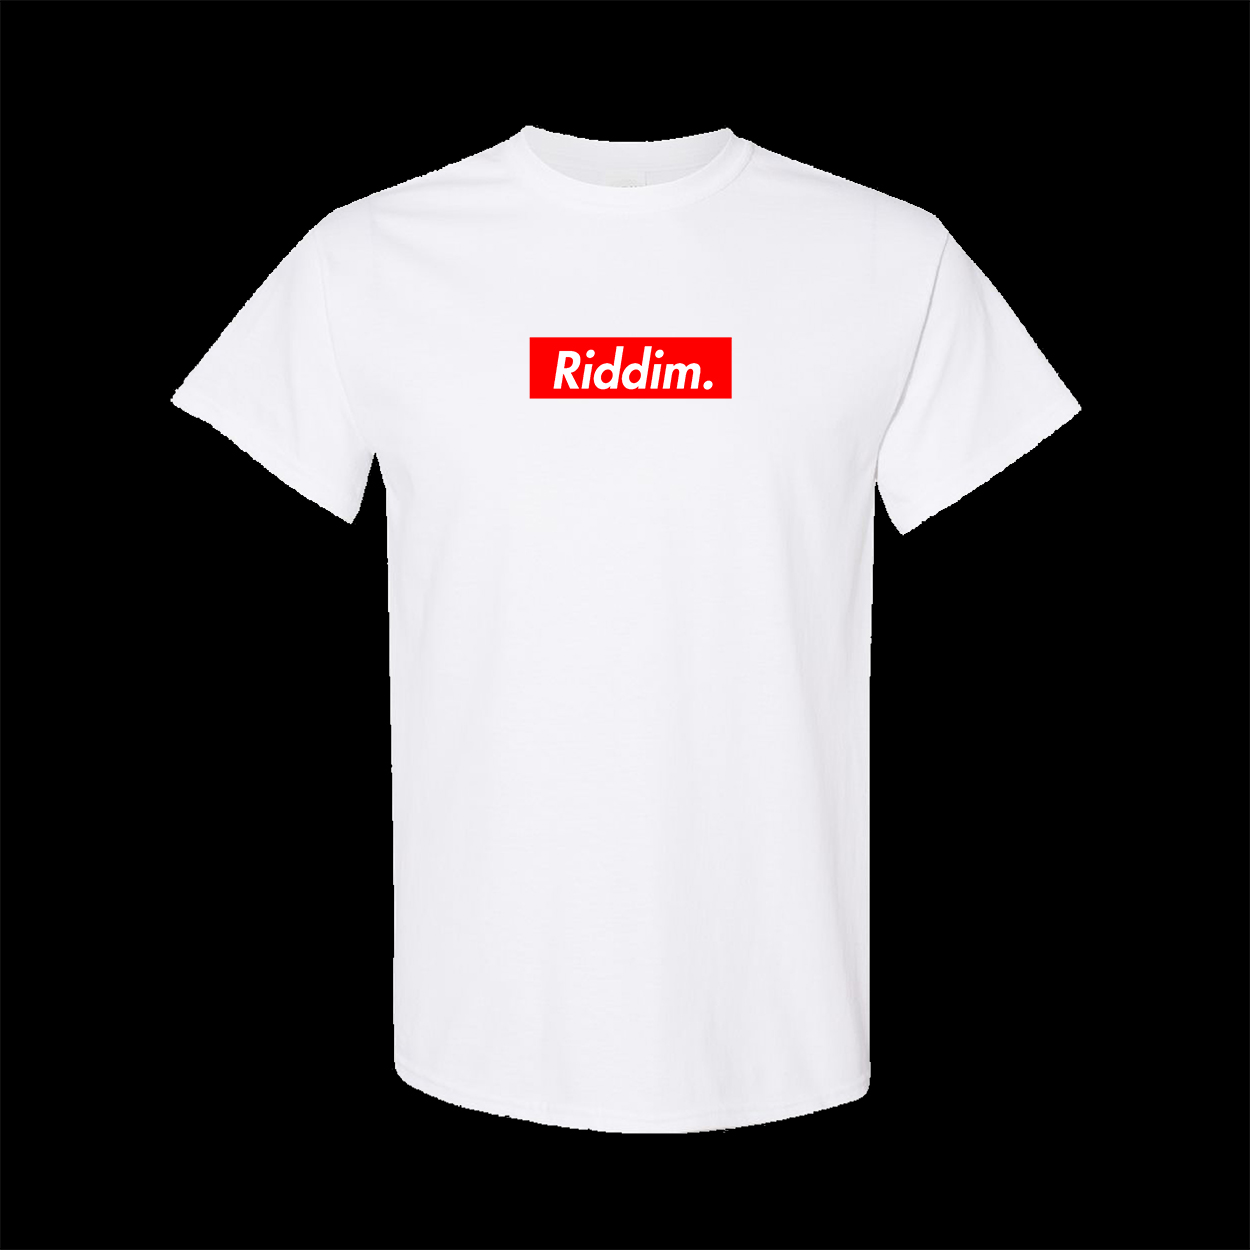 Riddim Supreme Shirt - Top Banana USA